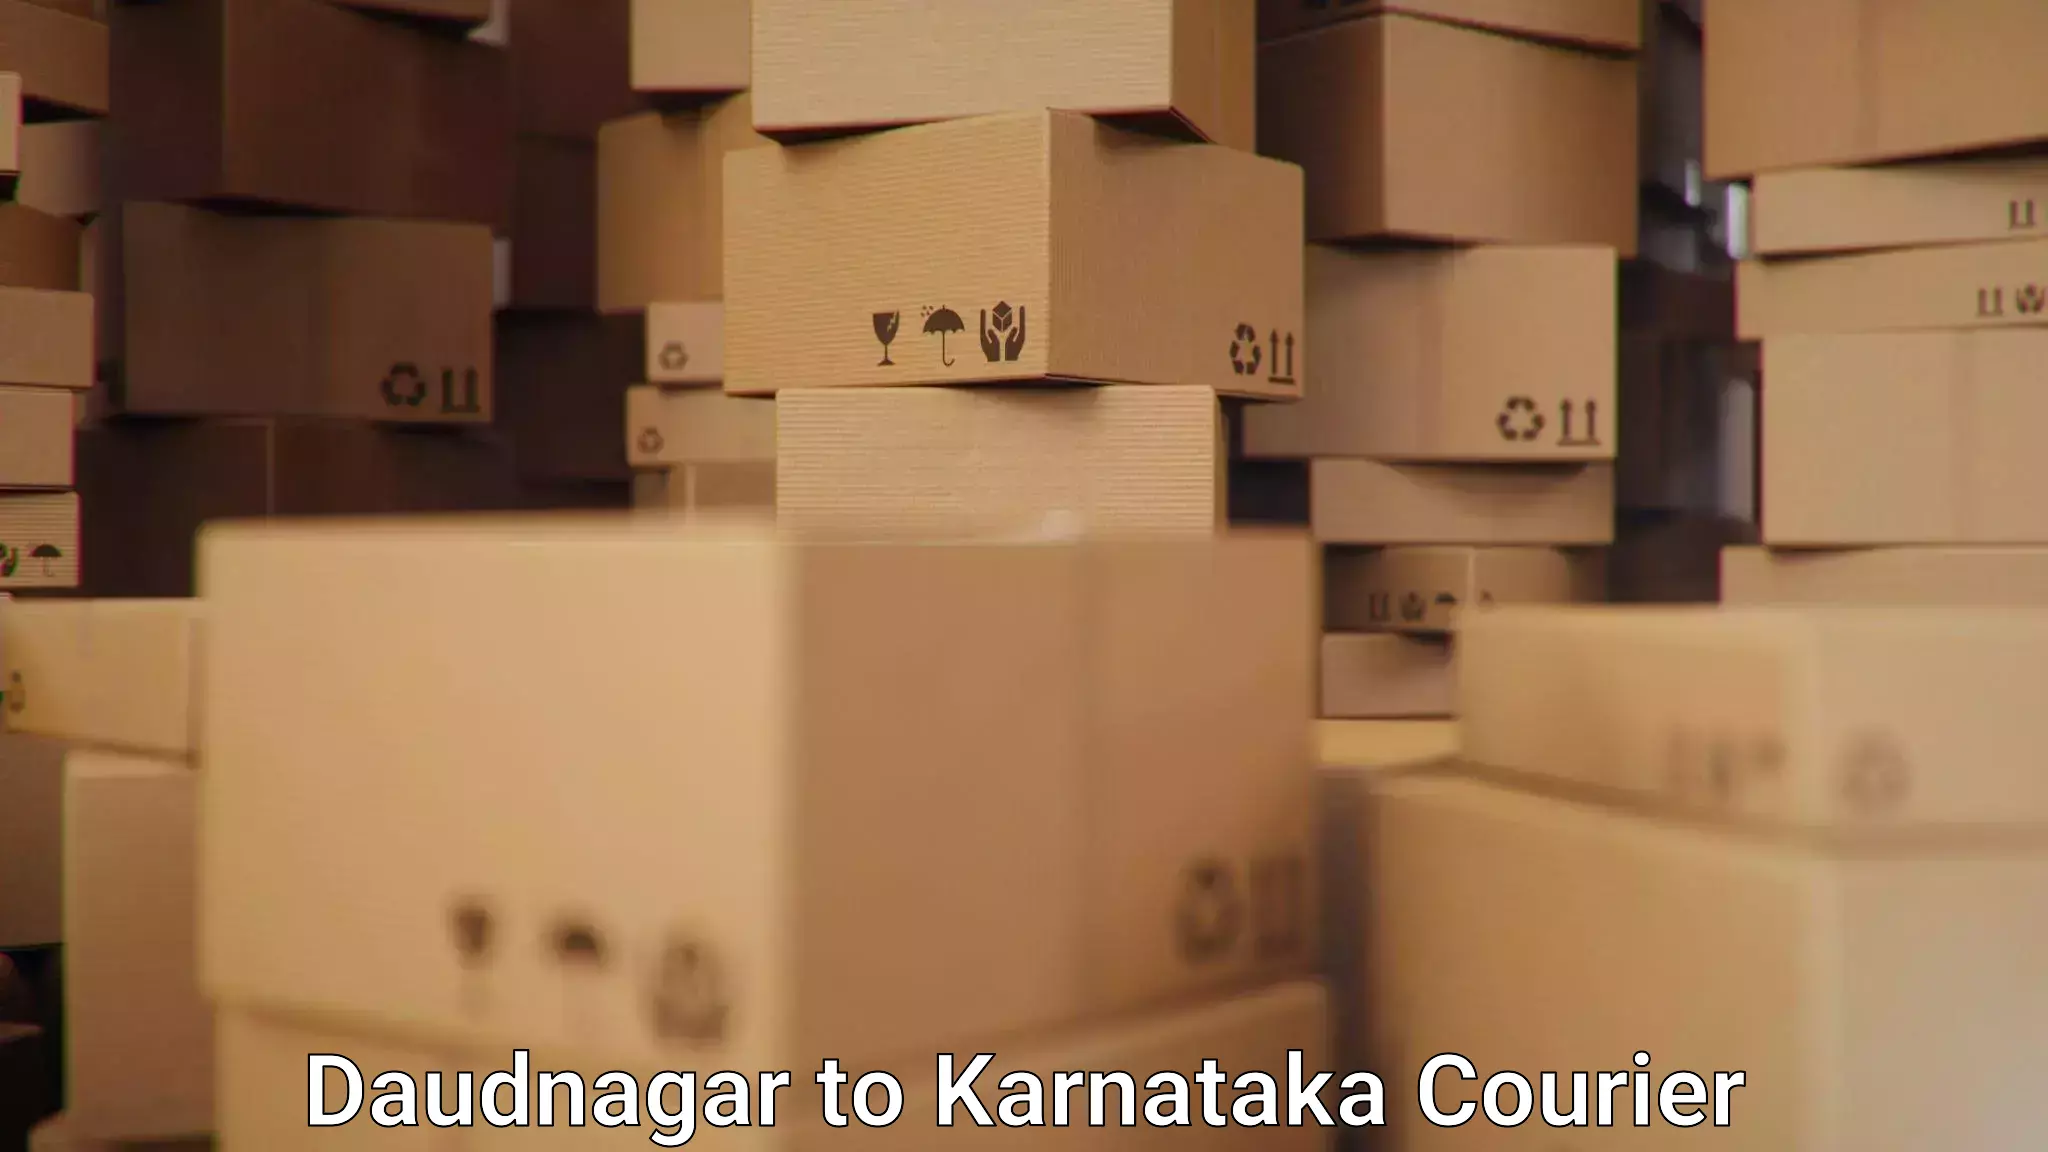 Express courier facilities Daudnagar to Yelburga